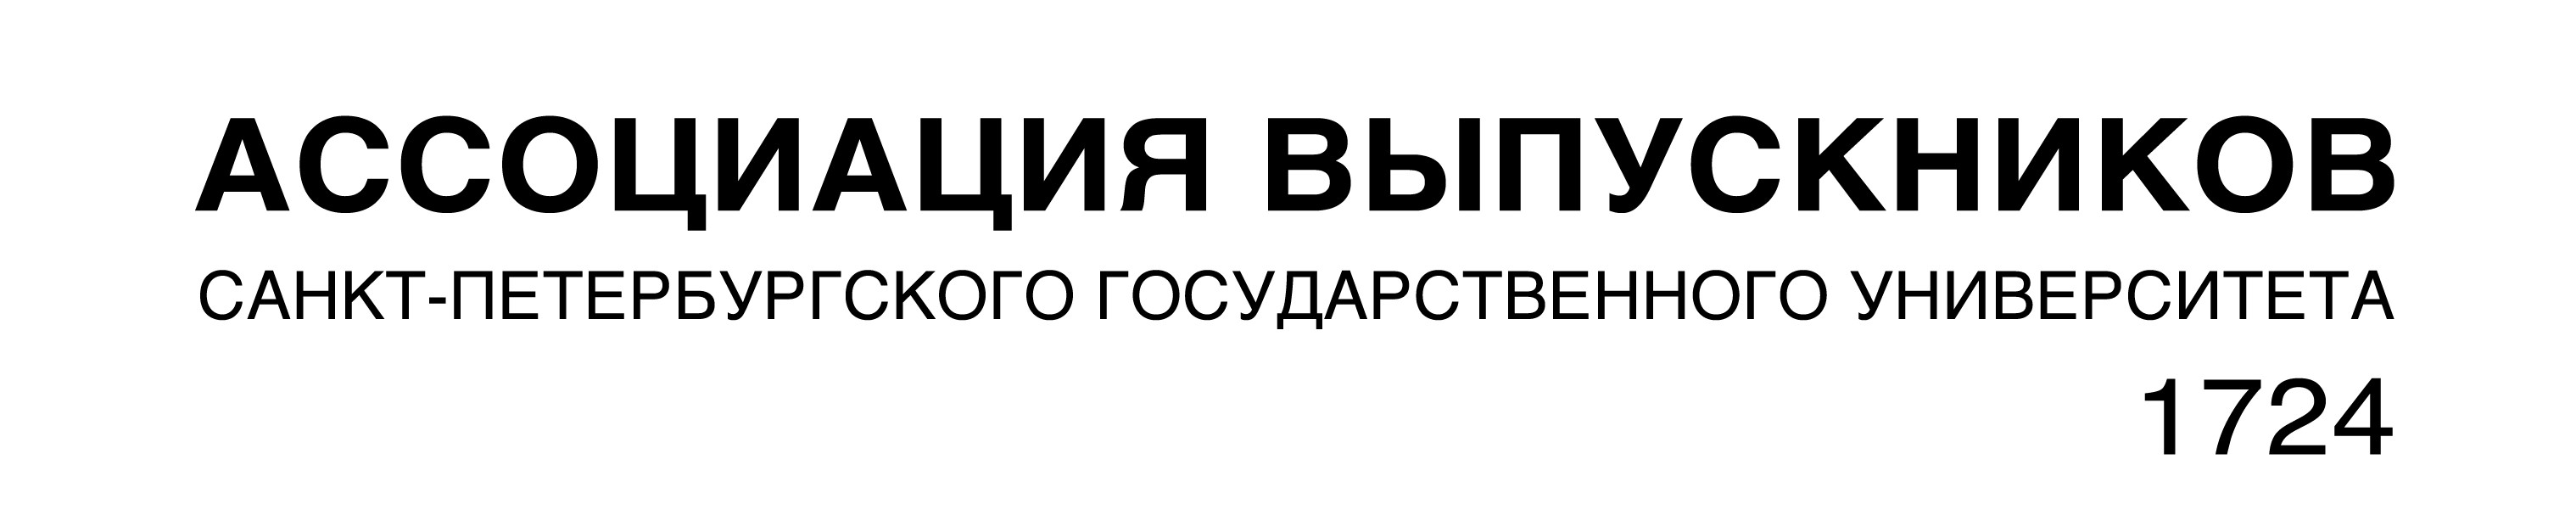 AV_SPBGU_font_logo2_b5017596